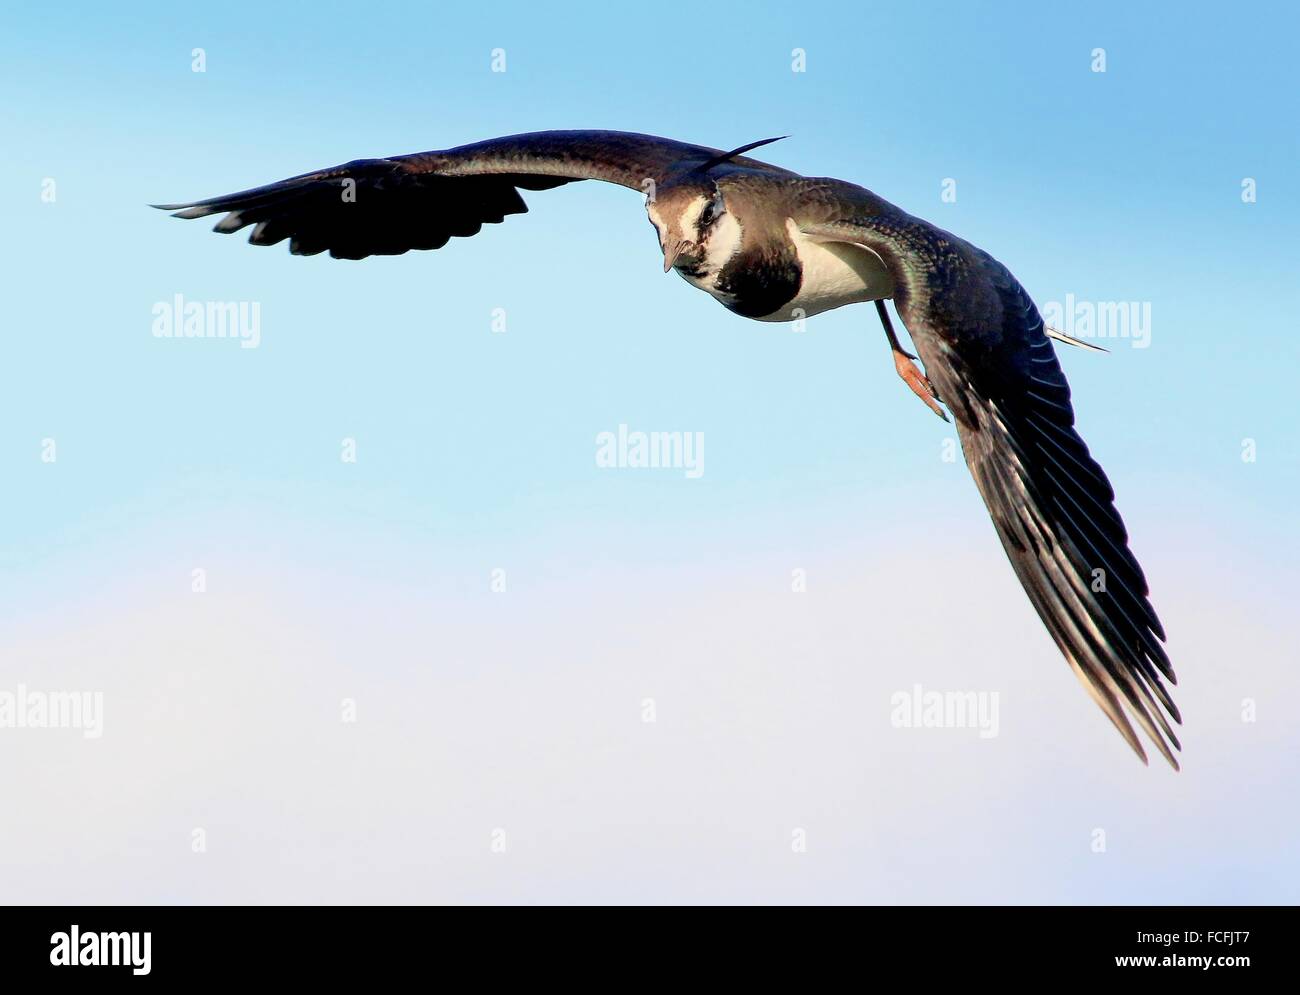 Europäischen gemeinsamen Kiebitz (Vanellus Vanellus) während des Fluges im Nahbereich, kommend in Richtung der Kamera Stockfoto